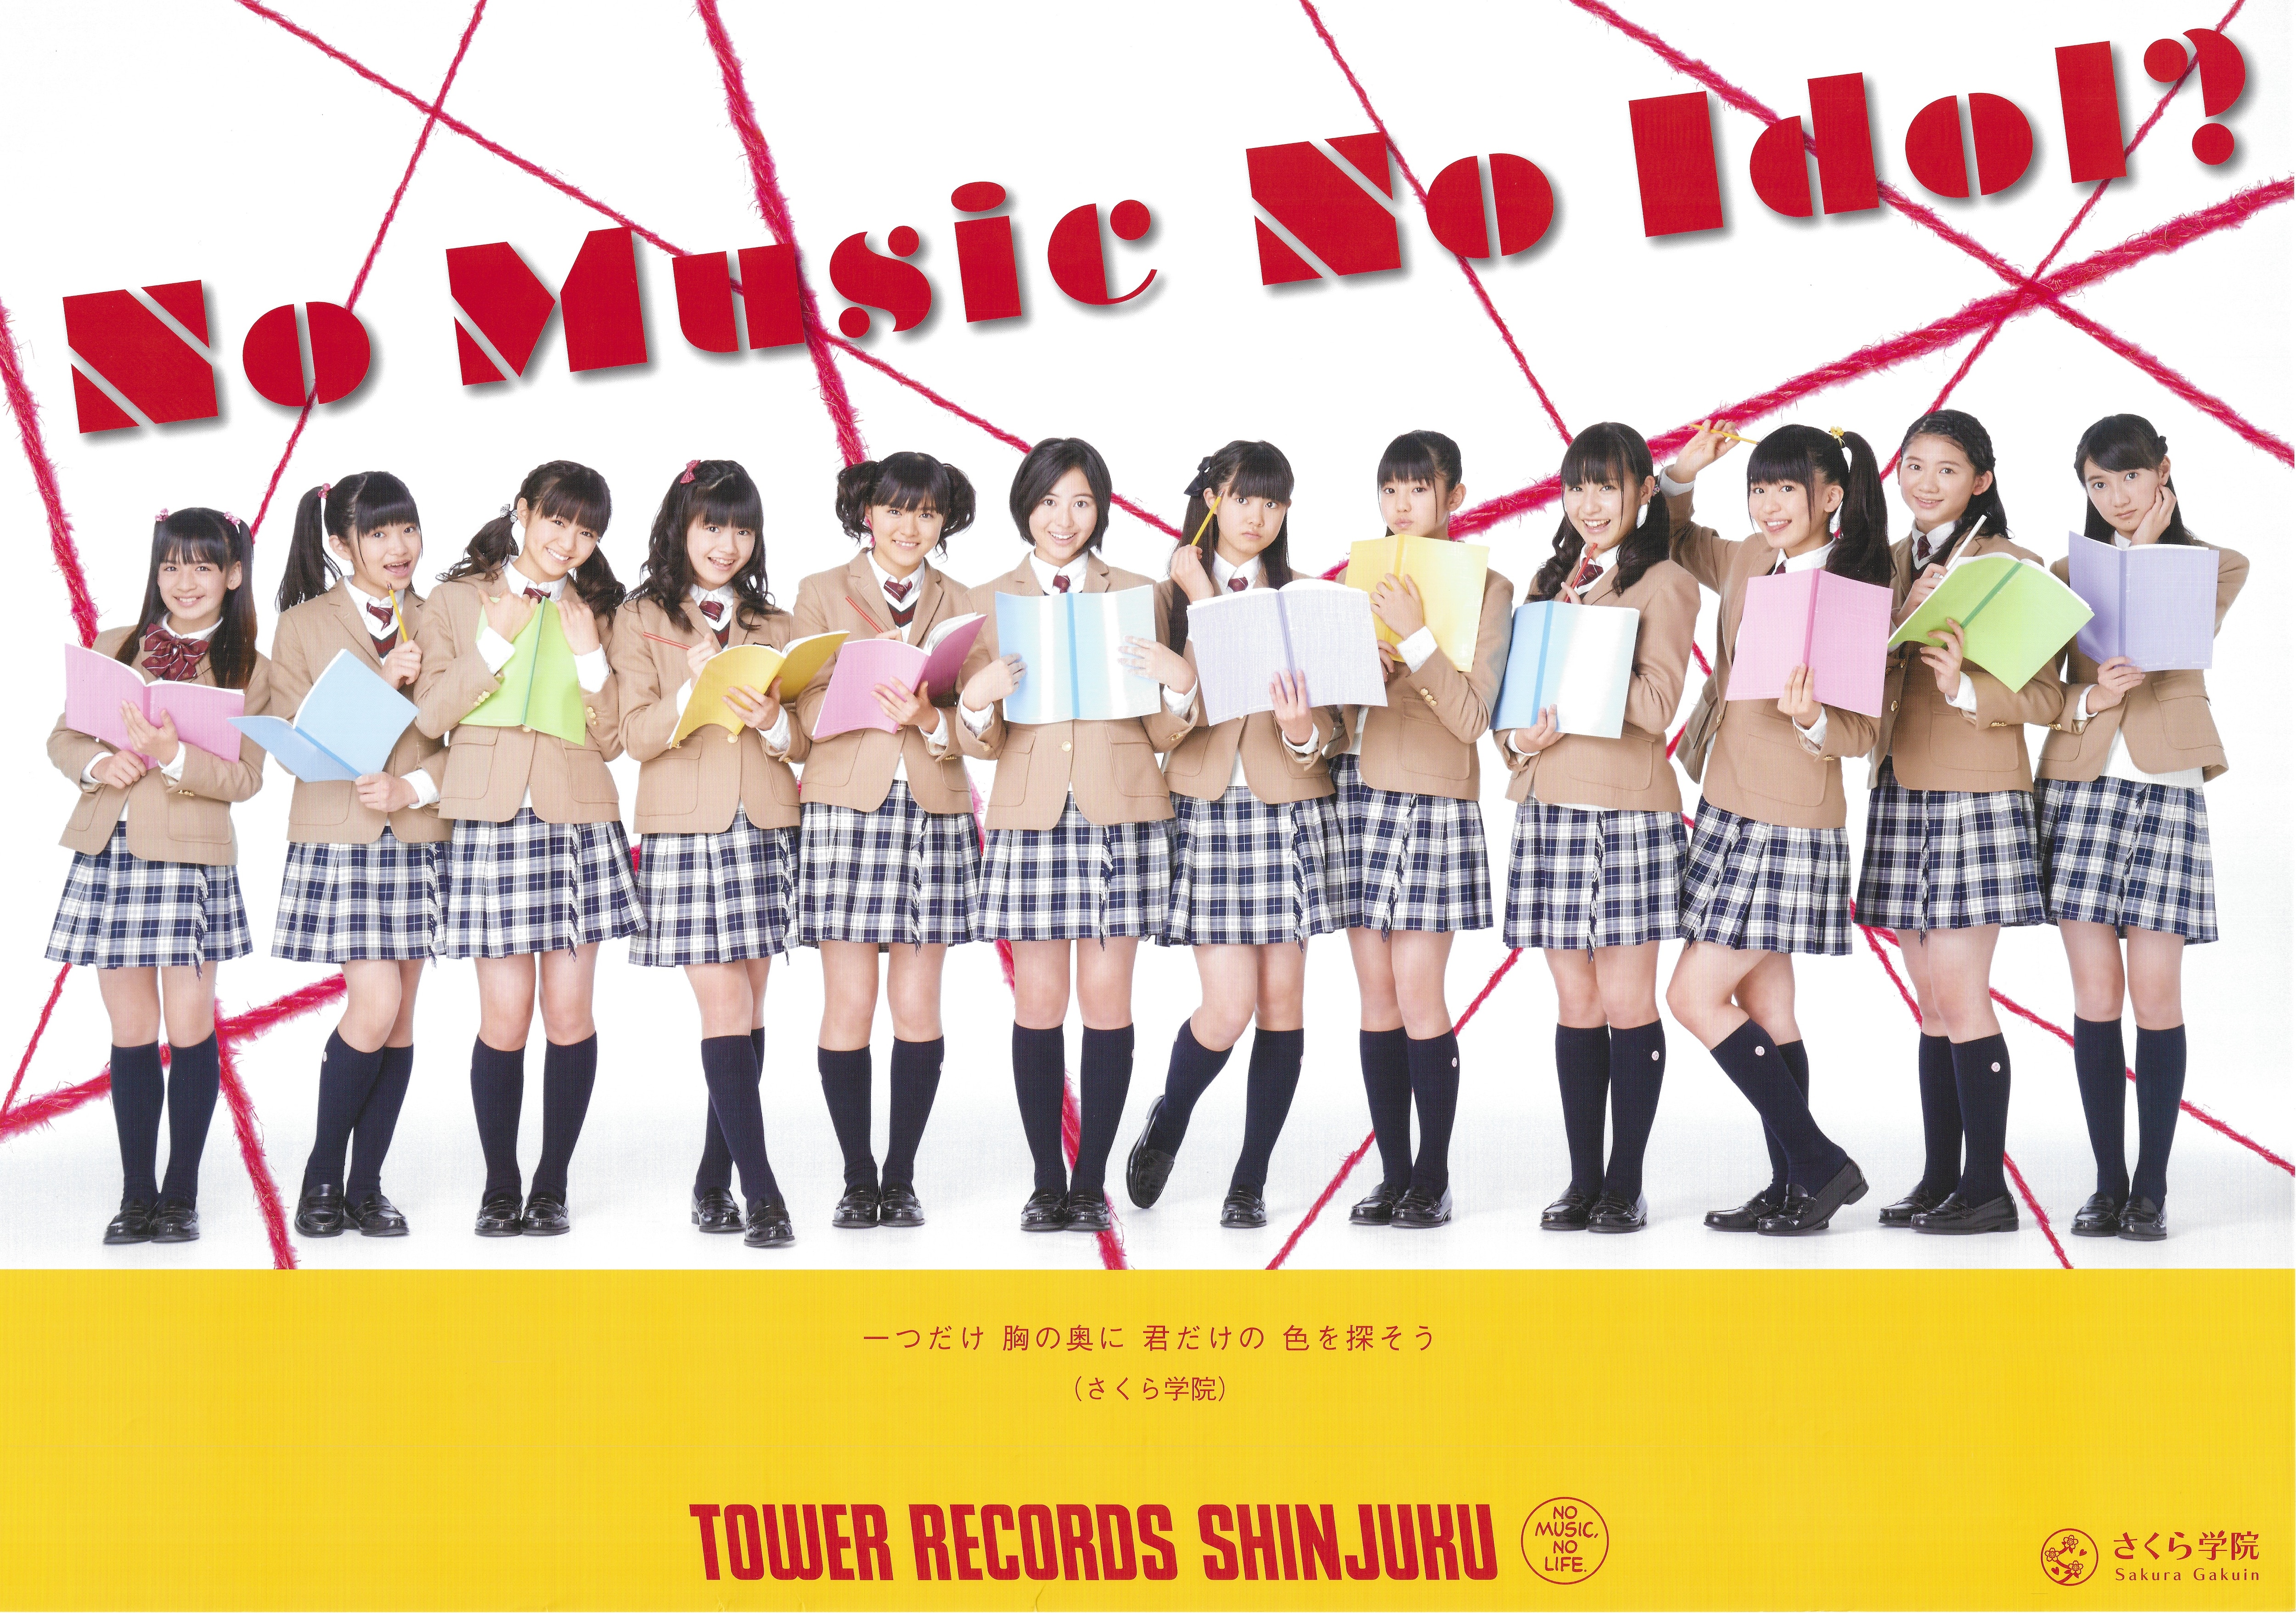 さくら学院 2013年度~絆~（集合） NO MUSIC NO IDOL?ポスター | あり 